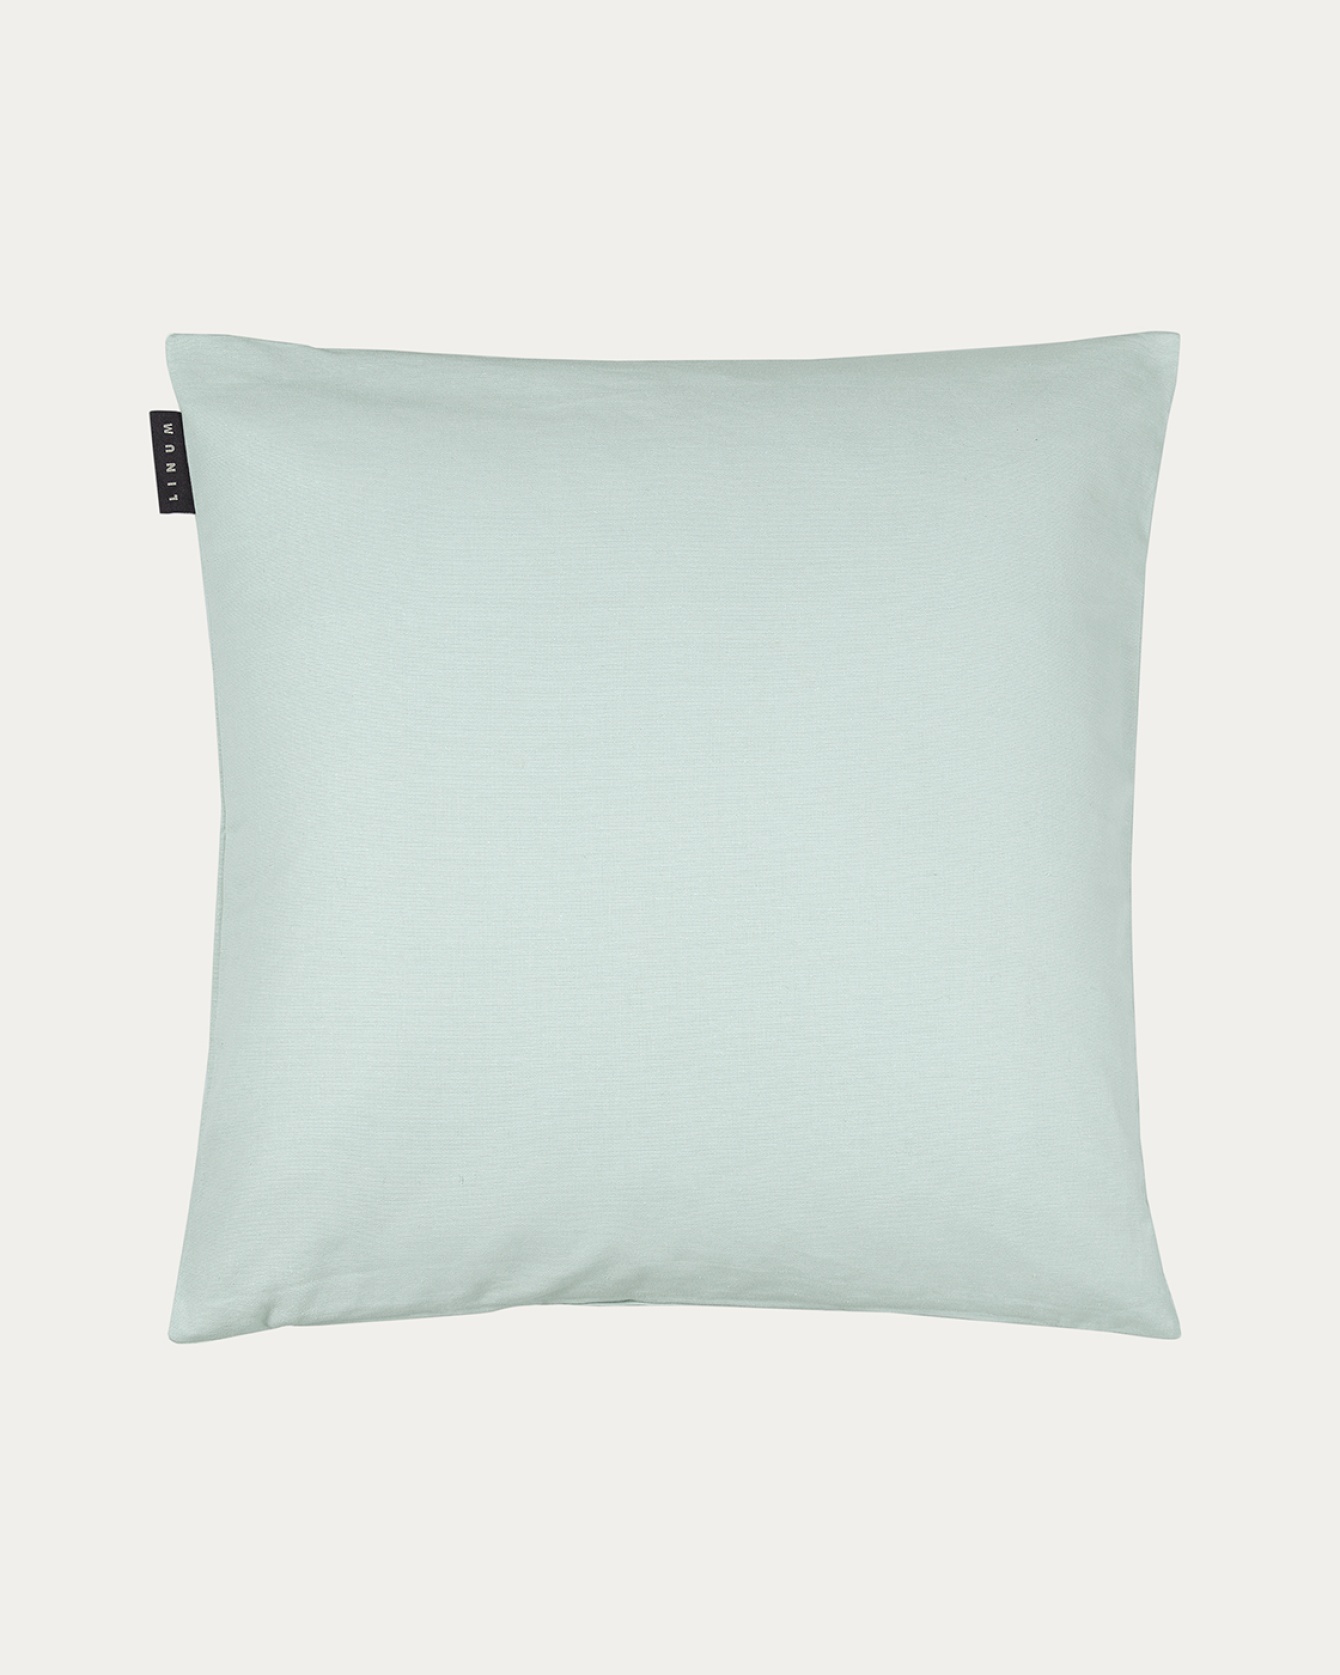 Image du produit housse de coussin ANNABELL vert clair glacé en coton doux de LINUM DESIGN. Taille 50 x 50 cm.